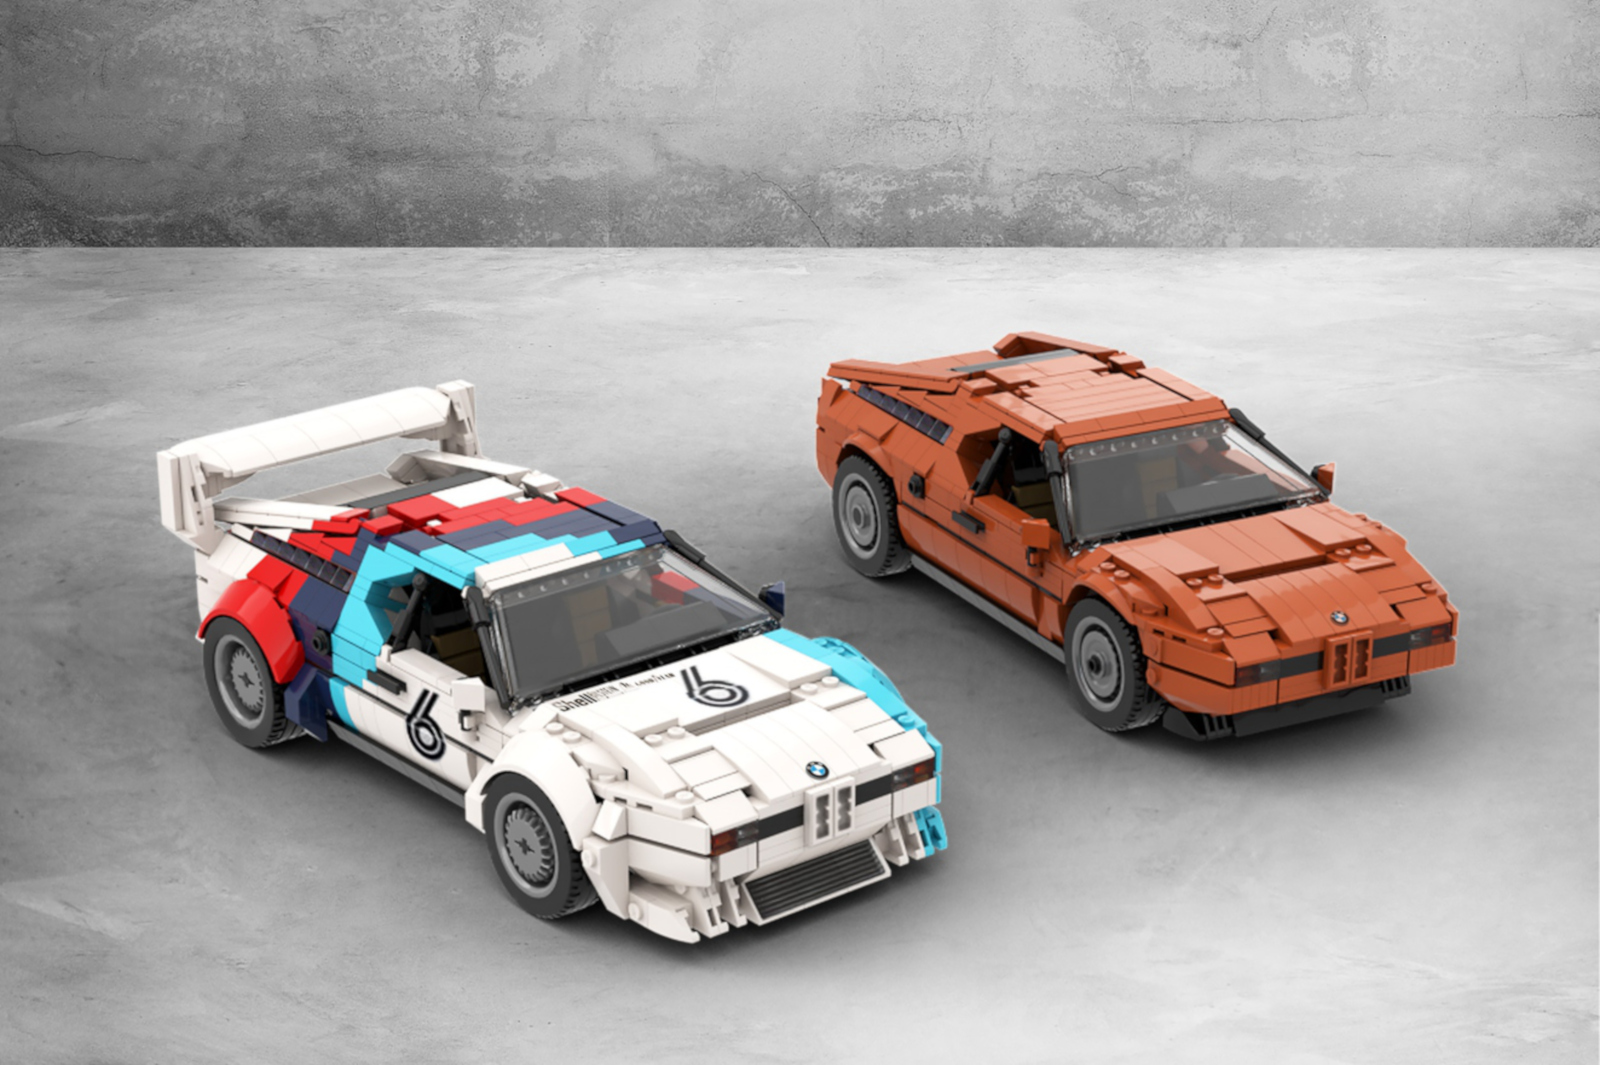 https://cdn.bimmertoday.de/wp-content/uploads/2020/02/Lego-BMW-M1-E26-Ideas-Tomoell-01.jpeg